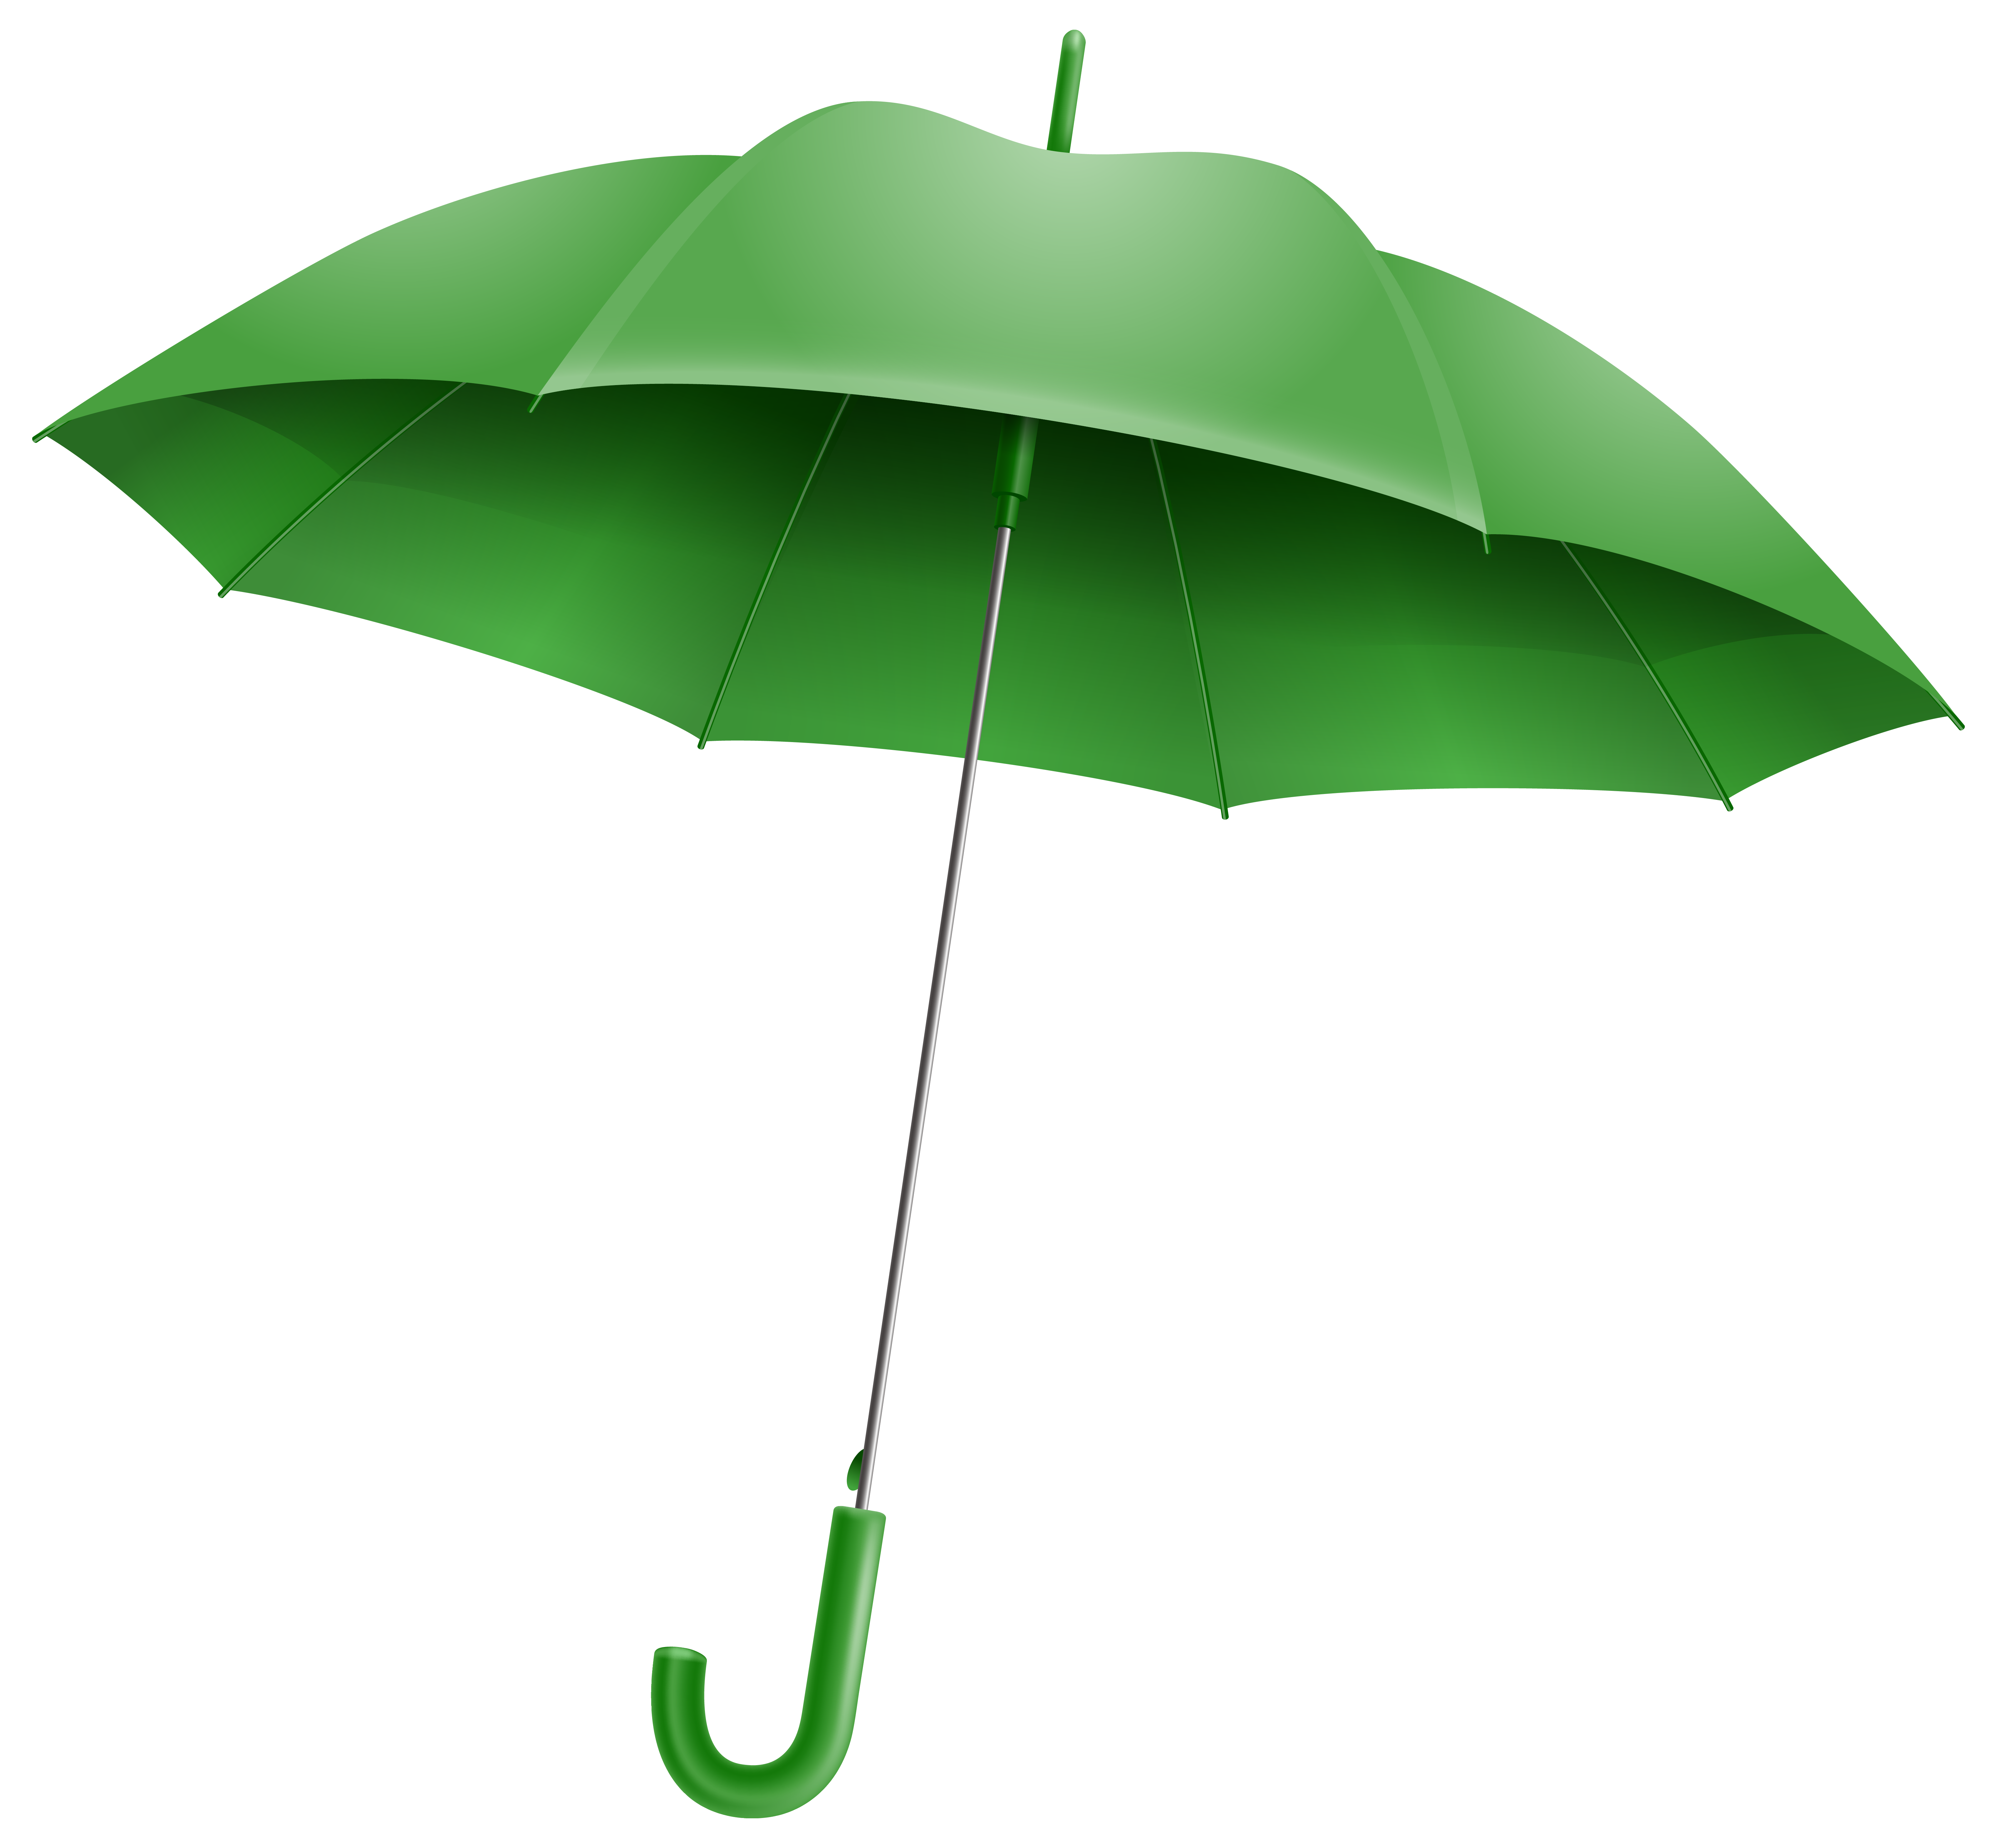 green umbrella clip art - photo #9